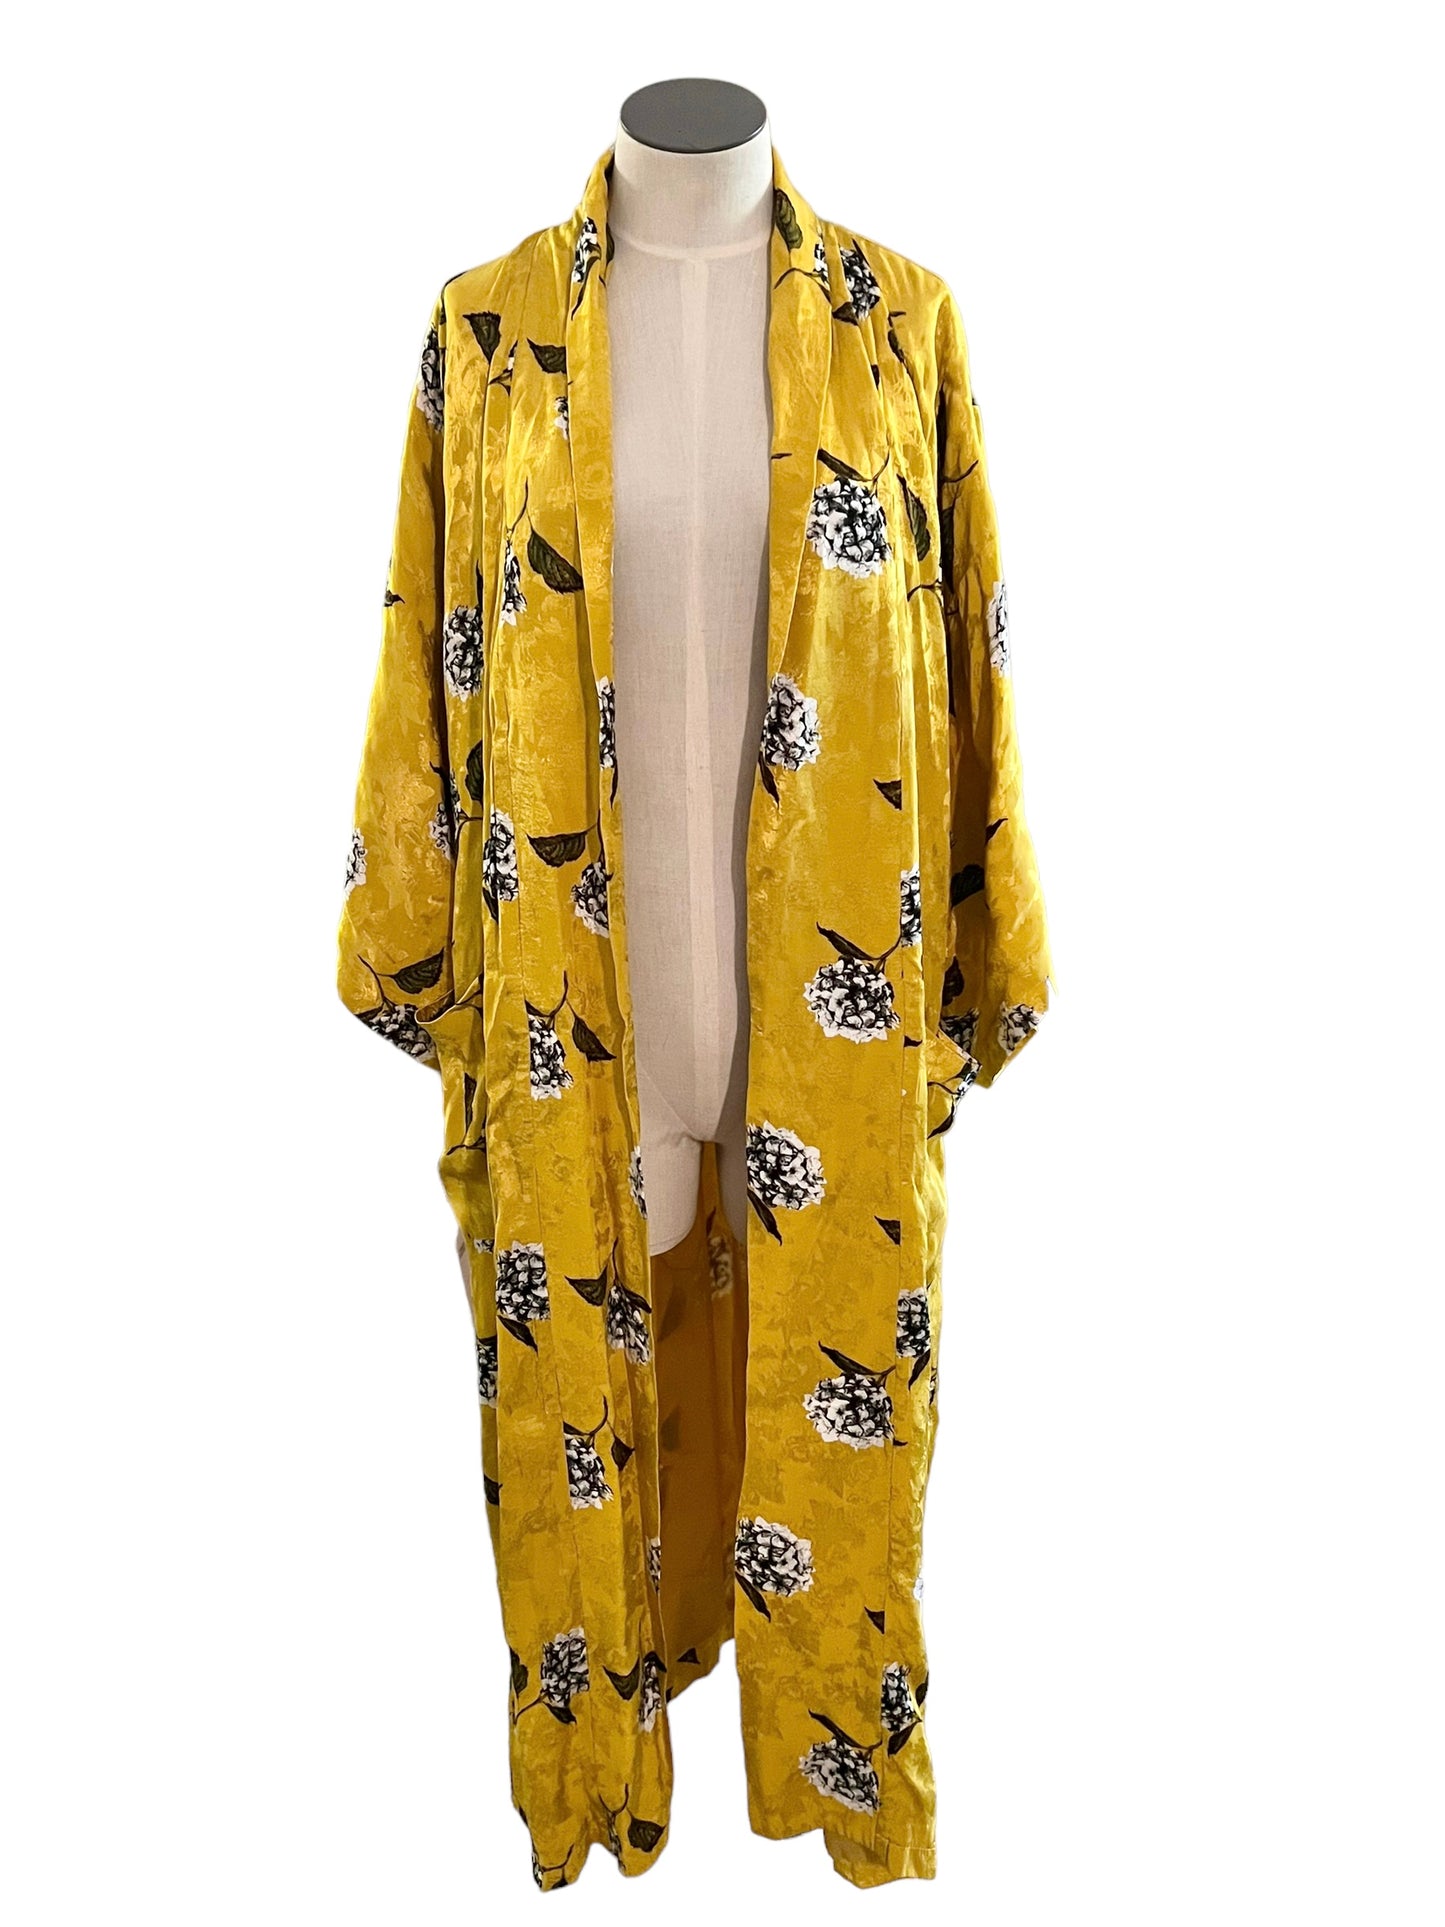 Topshop Size 4 Mustard Floral Print Kimono